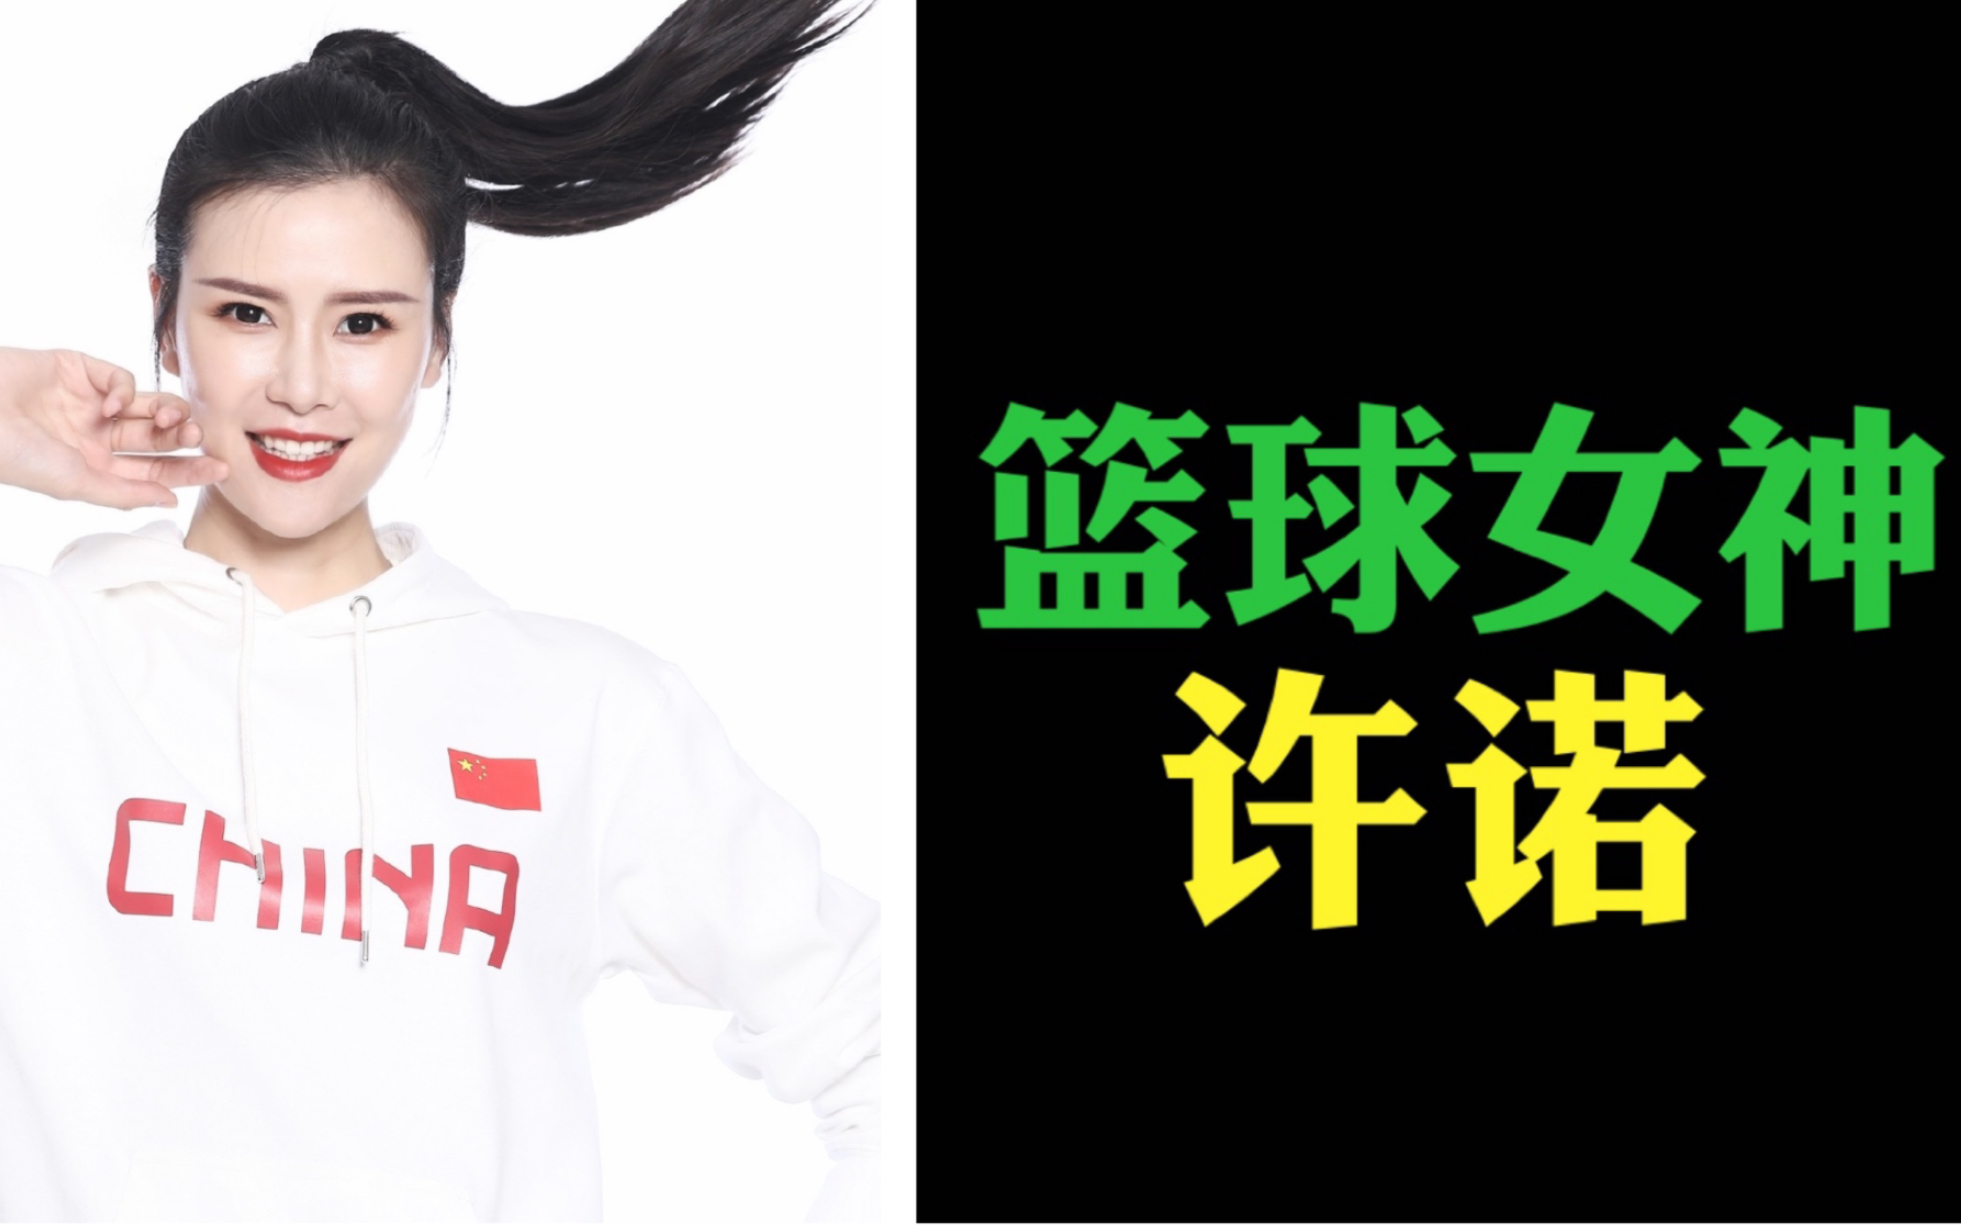 中国篮球女神许诺，颜值在线，球技高超，曾入选国家队夺得亚锦赛冠军。